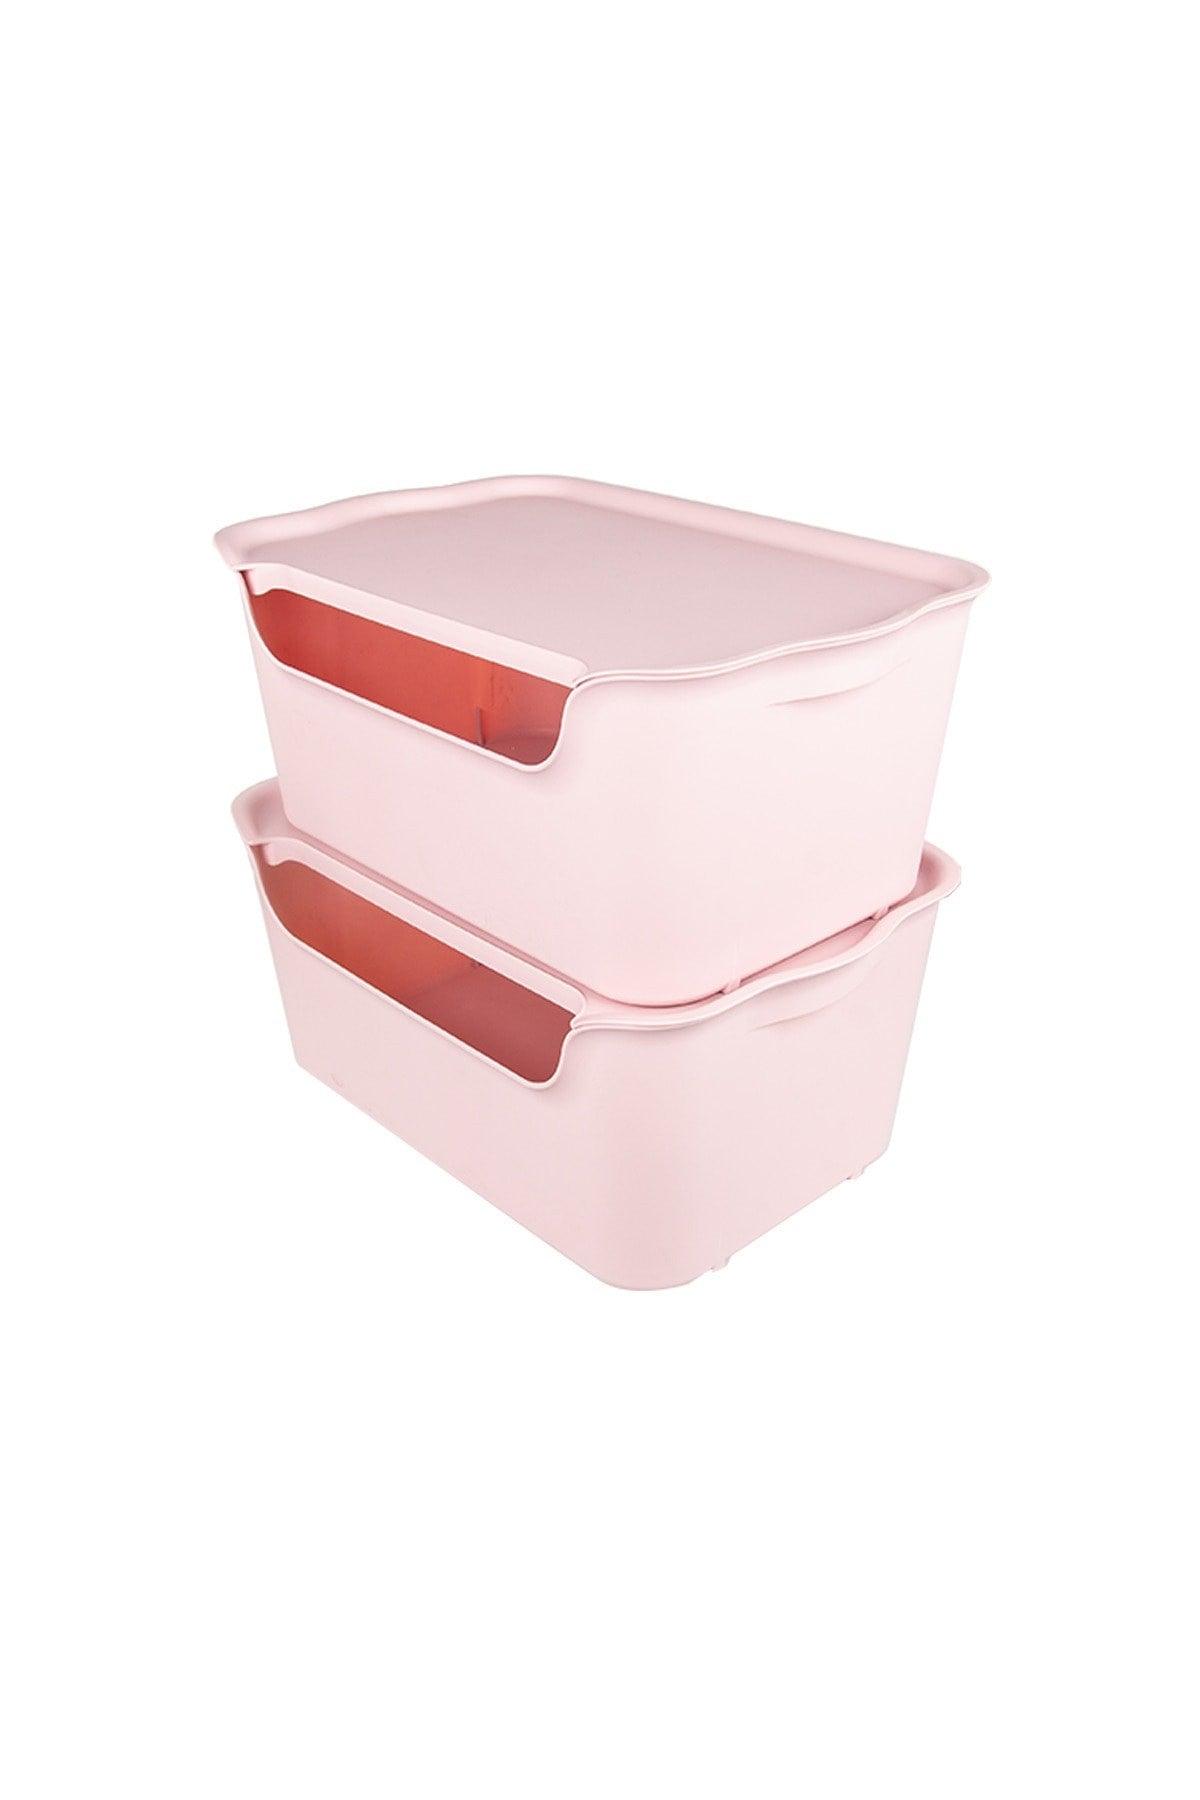 Organizer Box Pink Set of 2